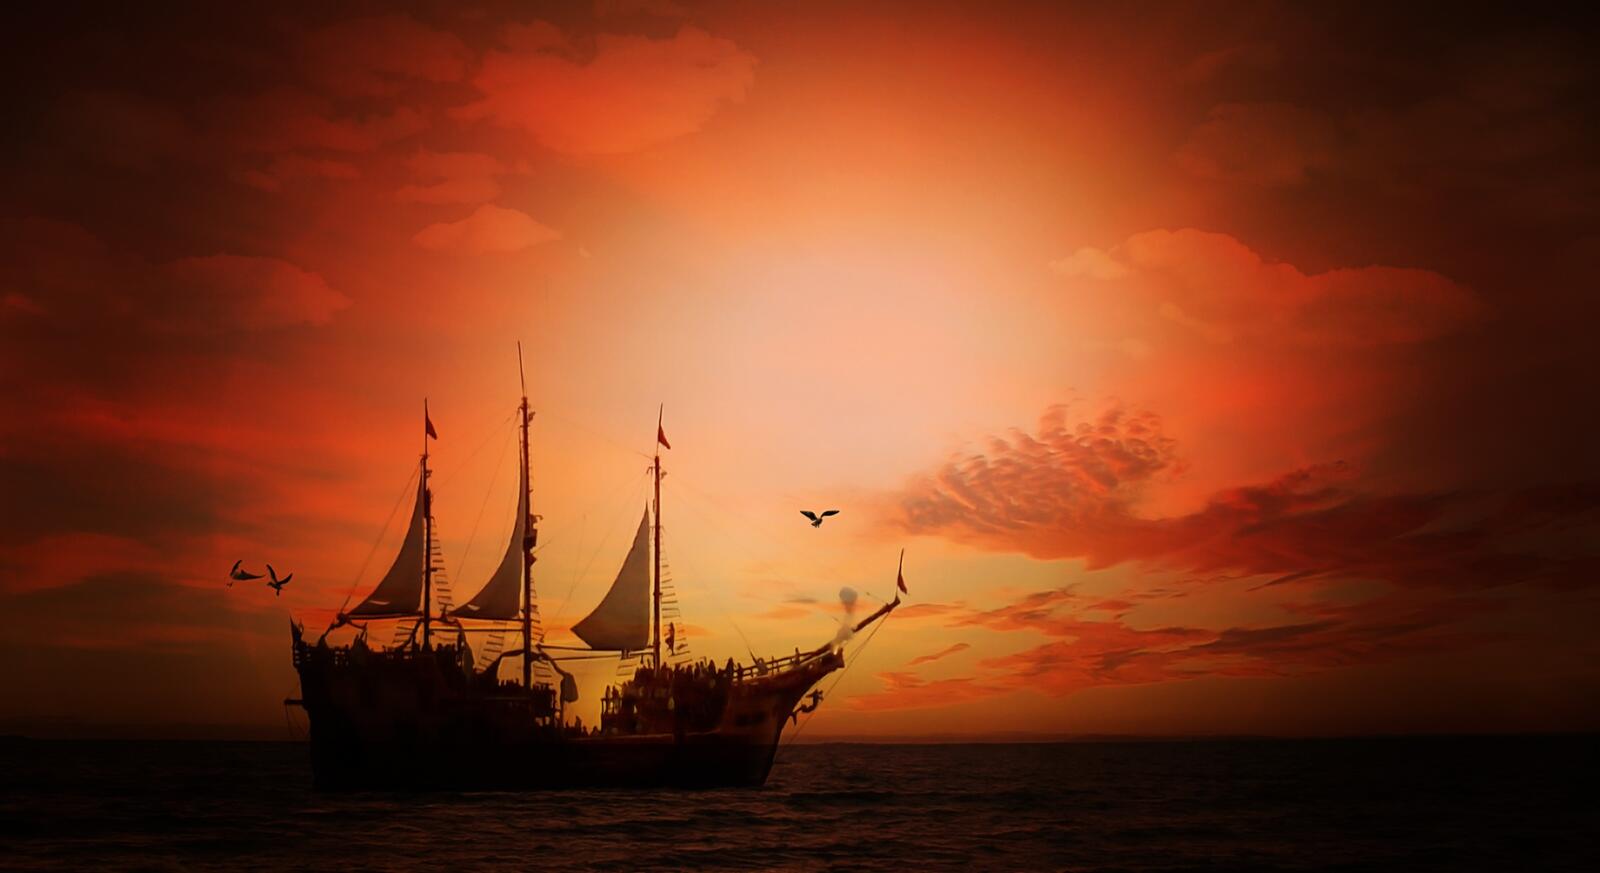 免费照片一幅日落时分的大型帆船图。